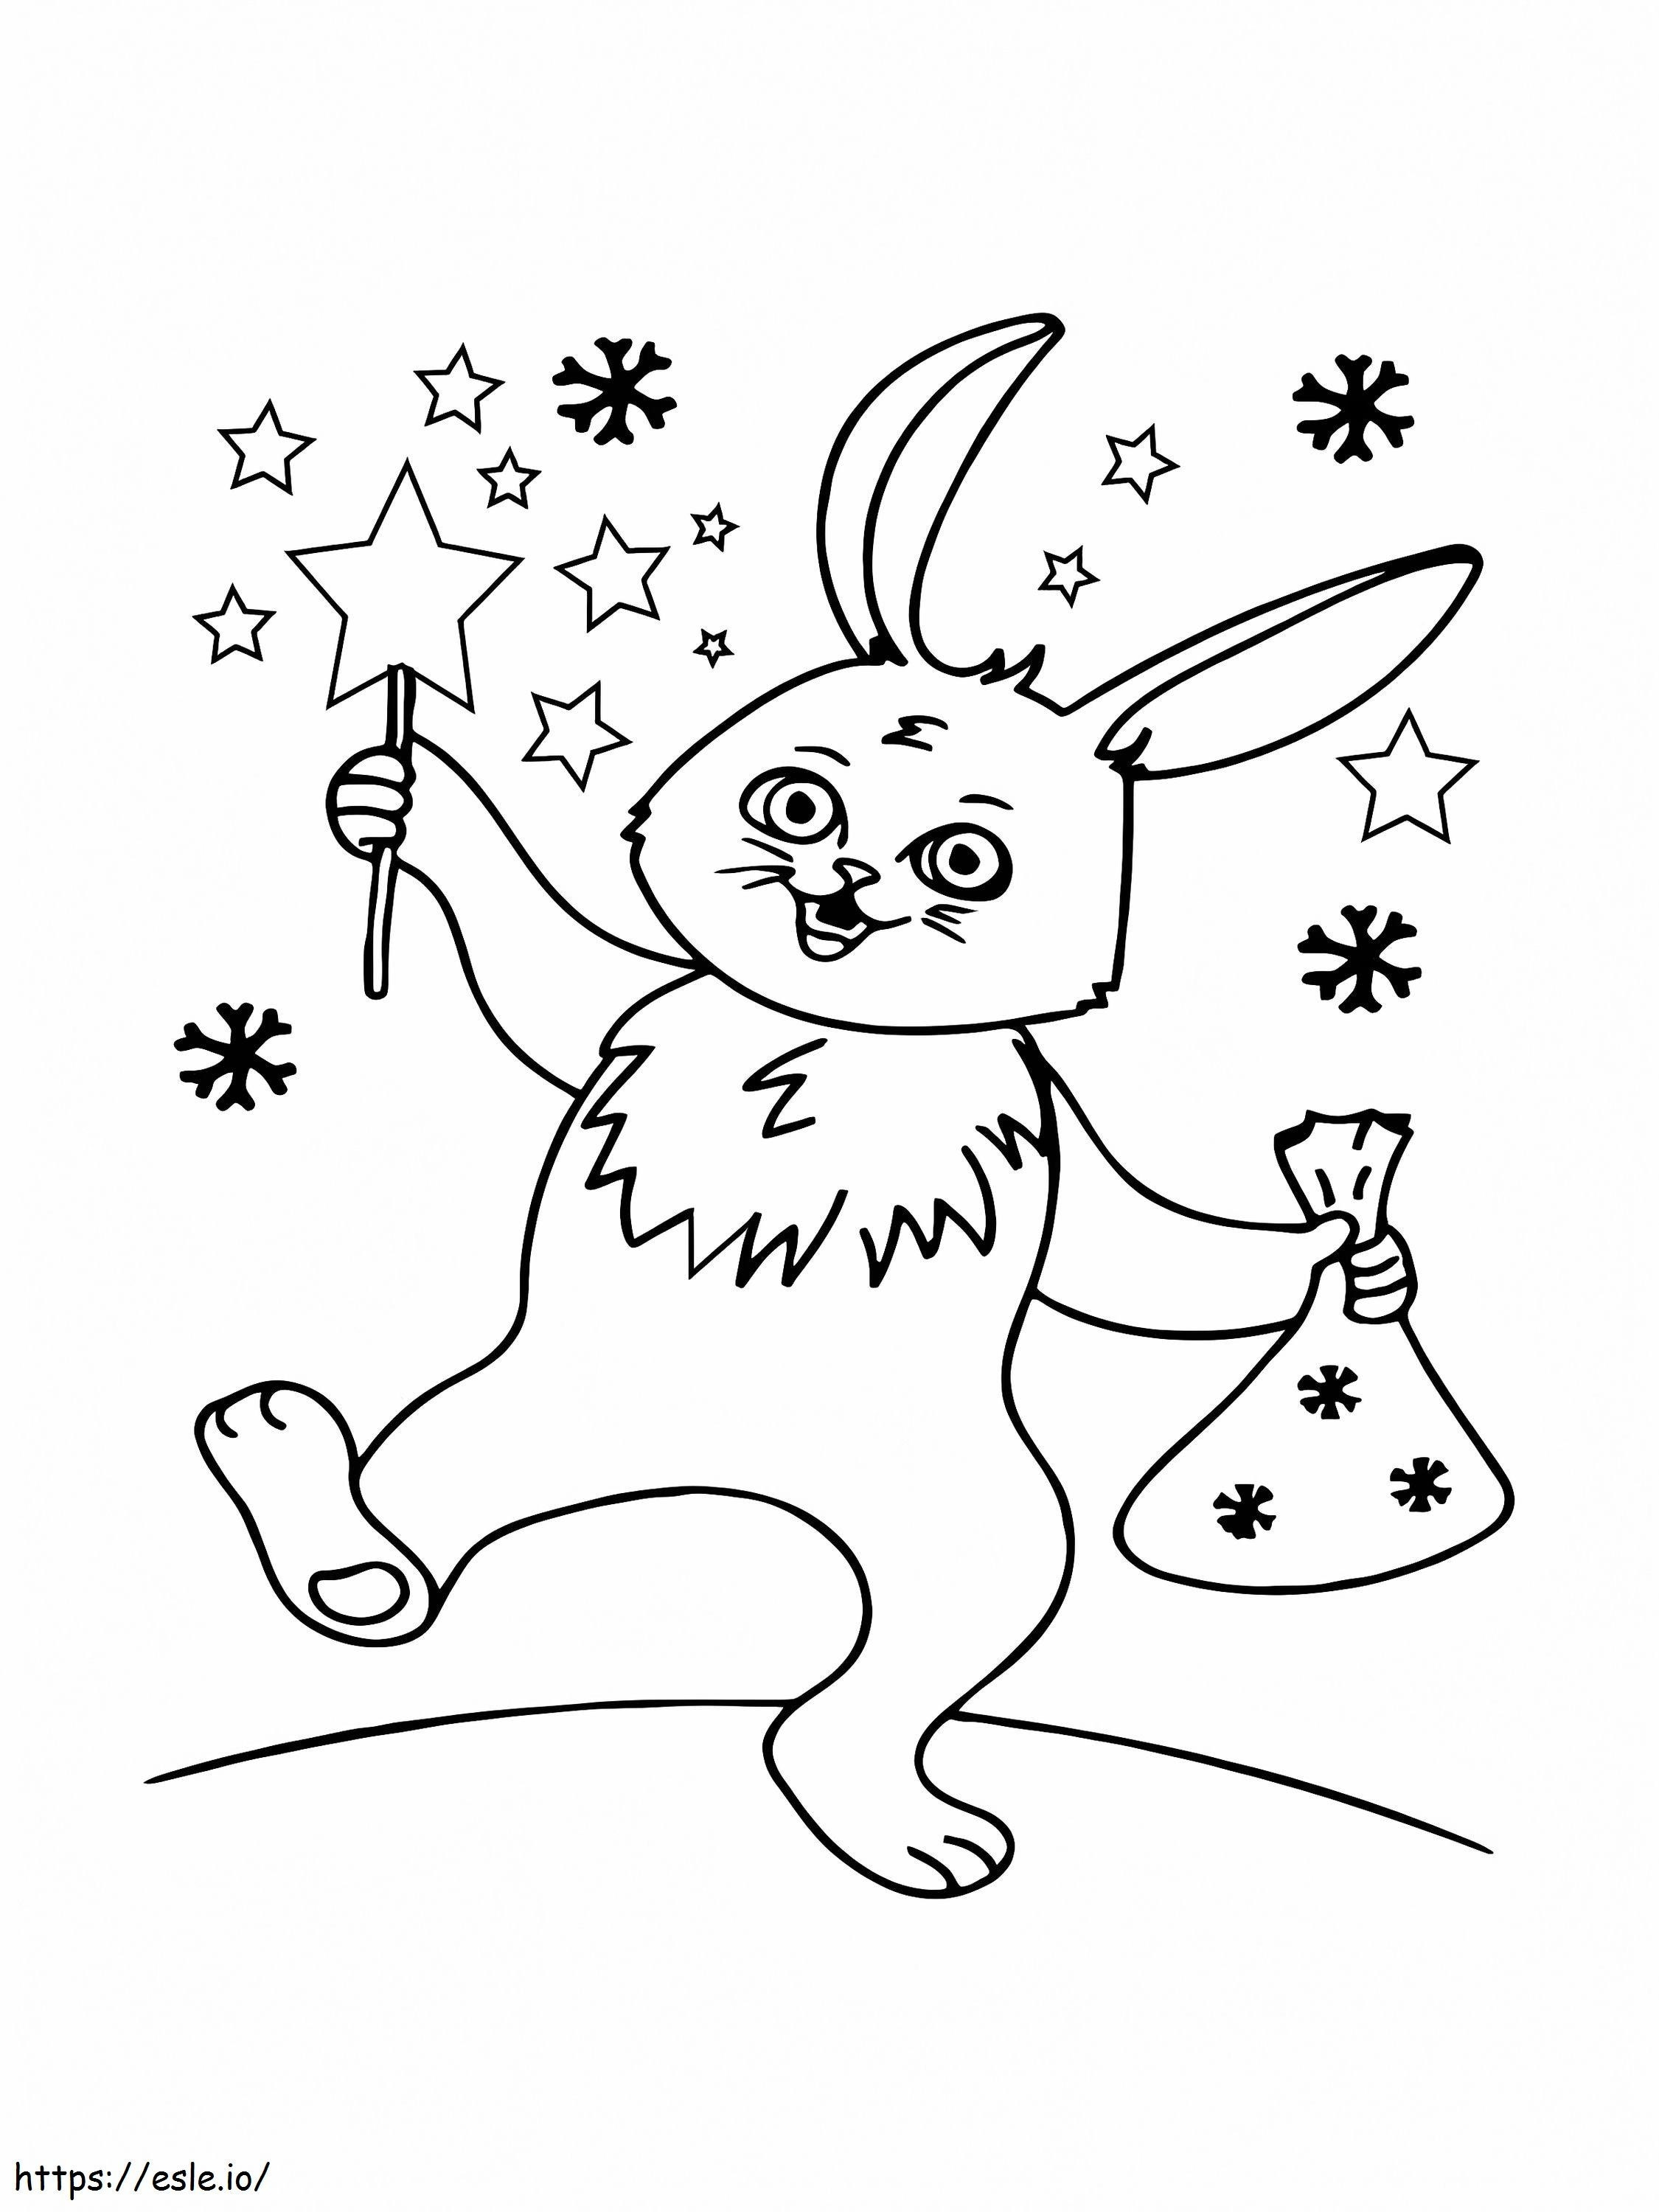 Joyful Christmas Bunny coloring page